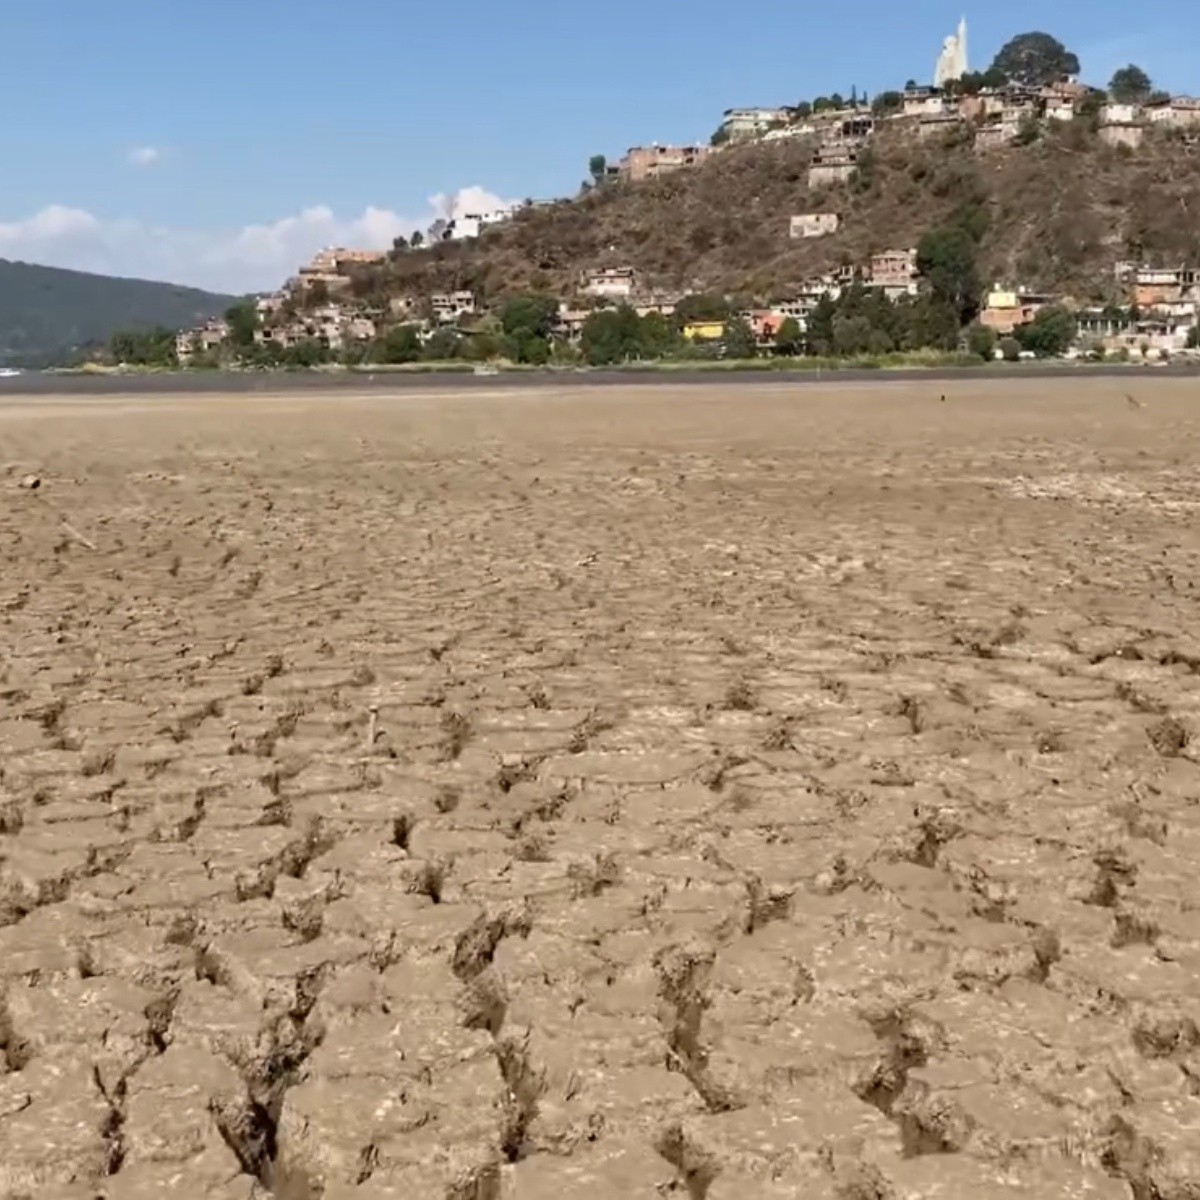 video: ya se puede llegar a la isla de janitzio caminando, el lago de pátzcuaro se seca